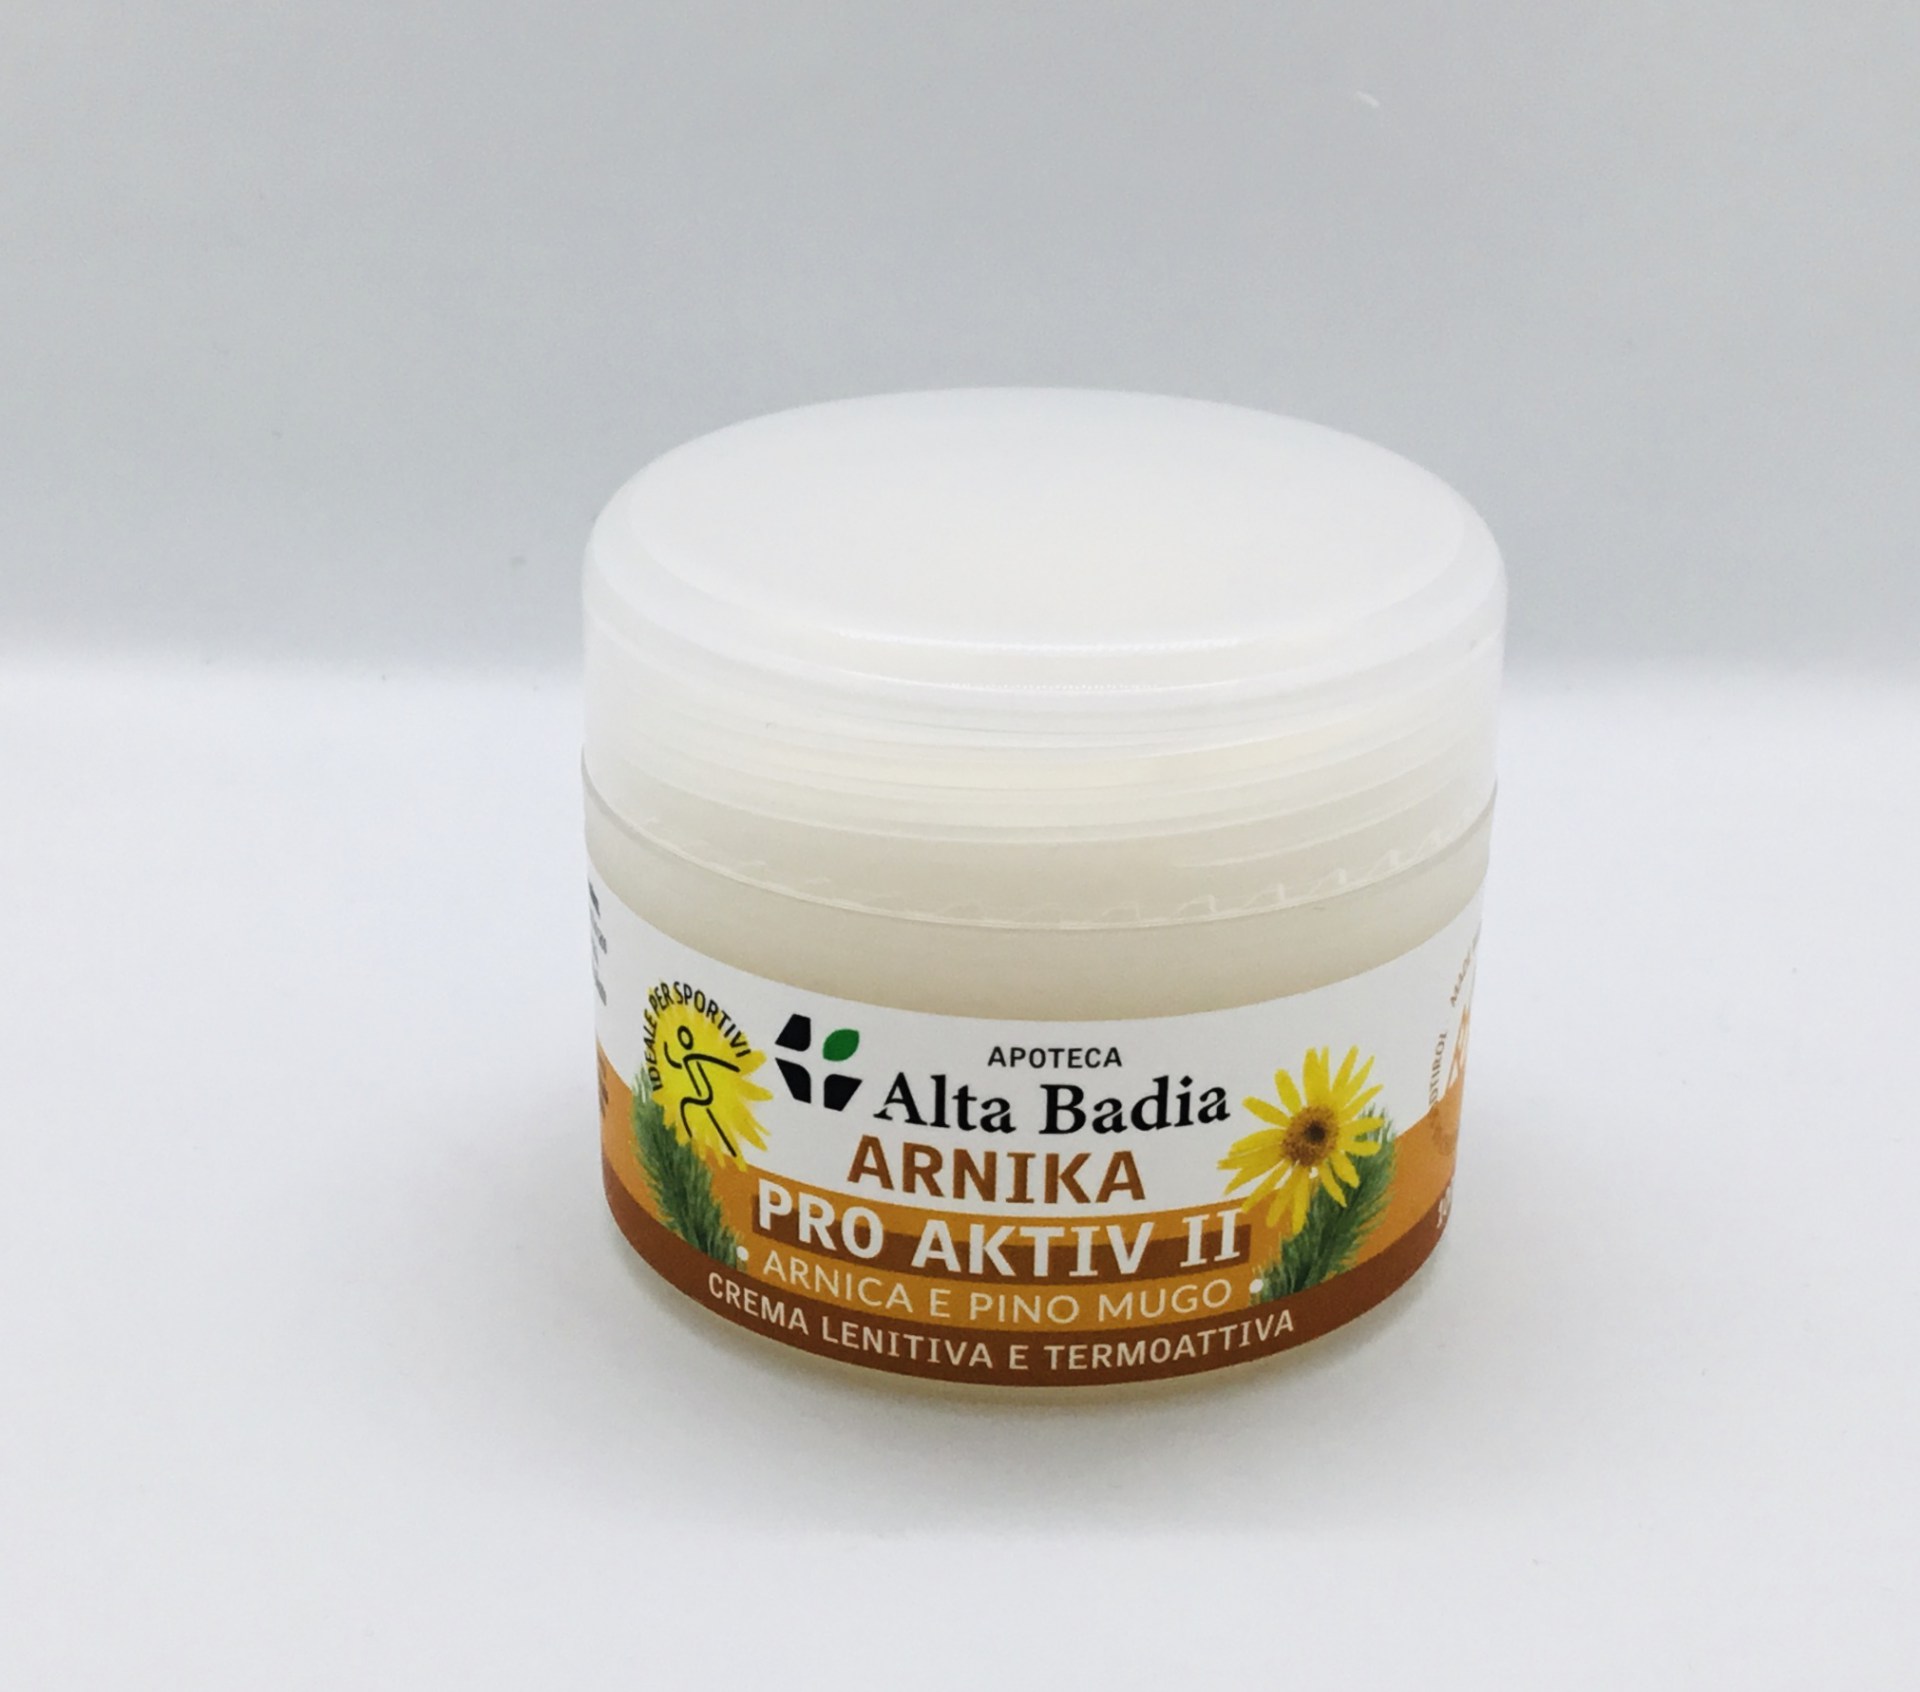 Body care: Arnica cream